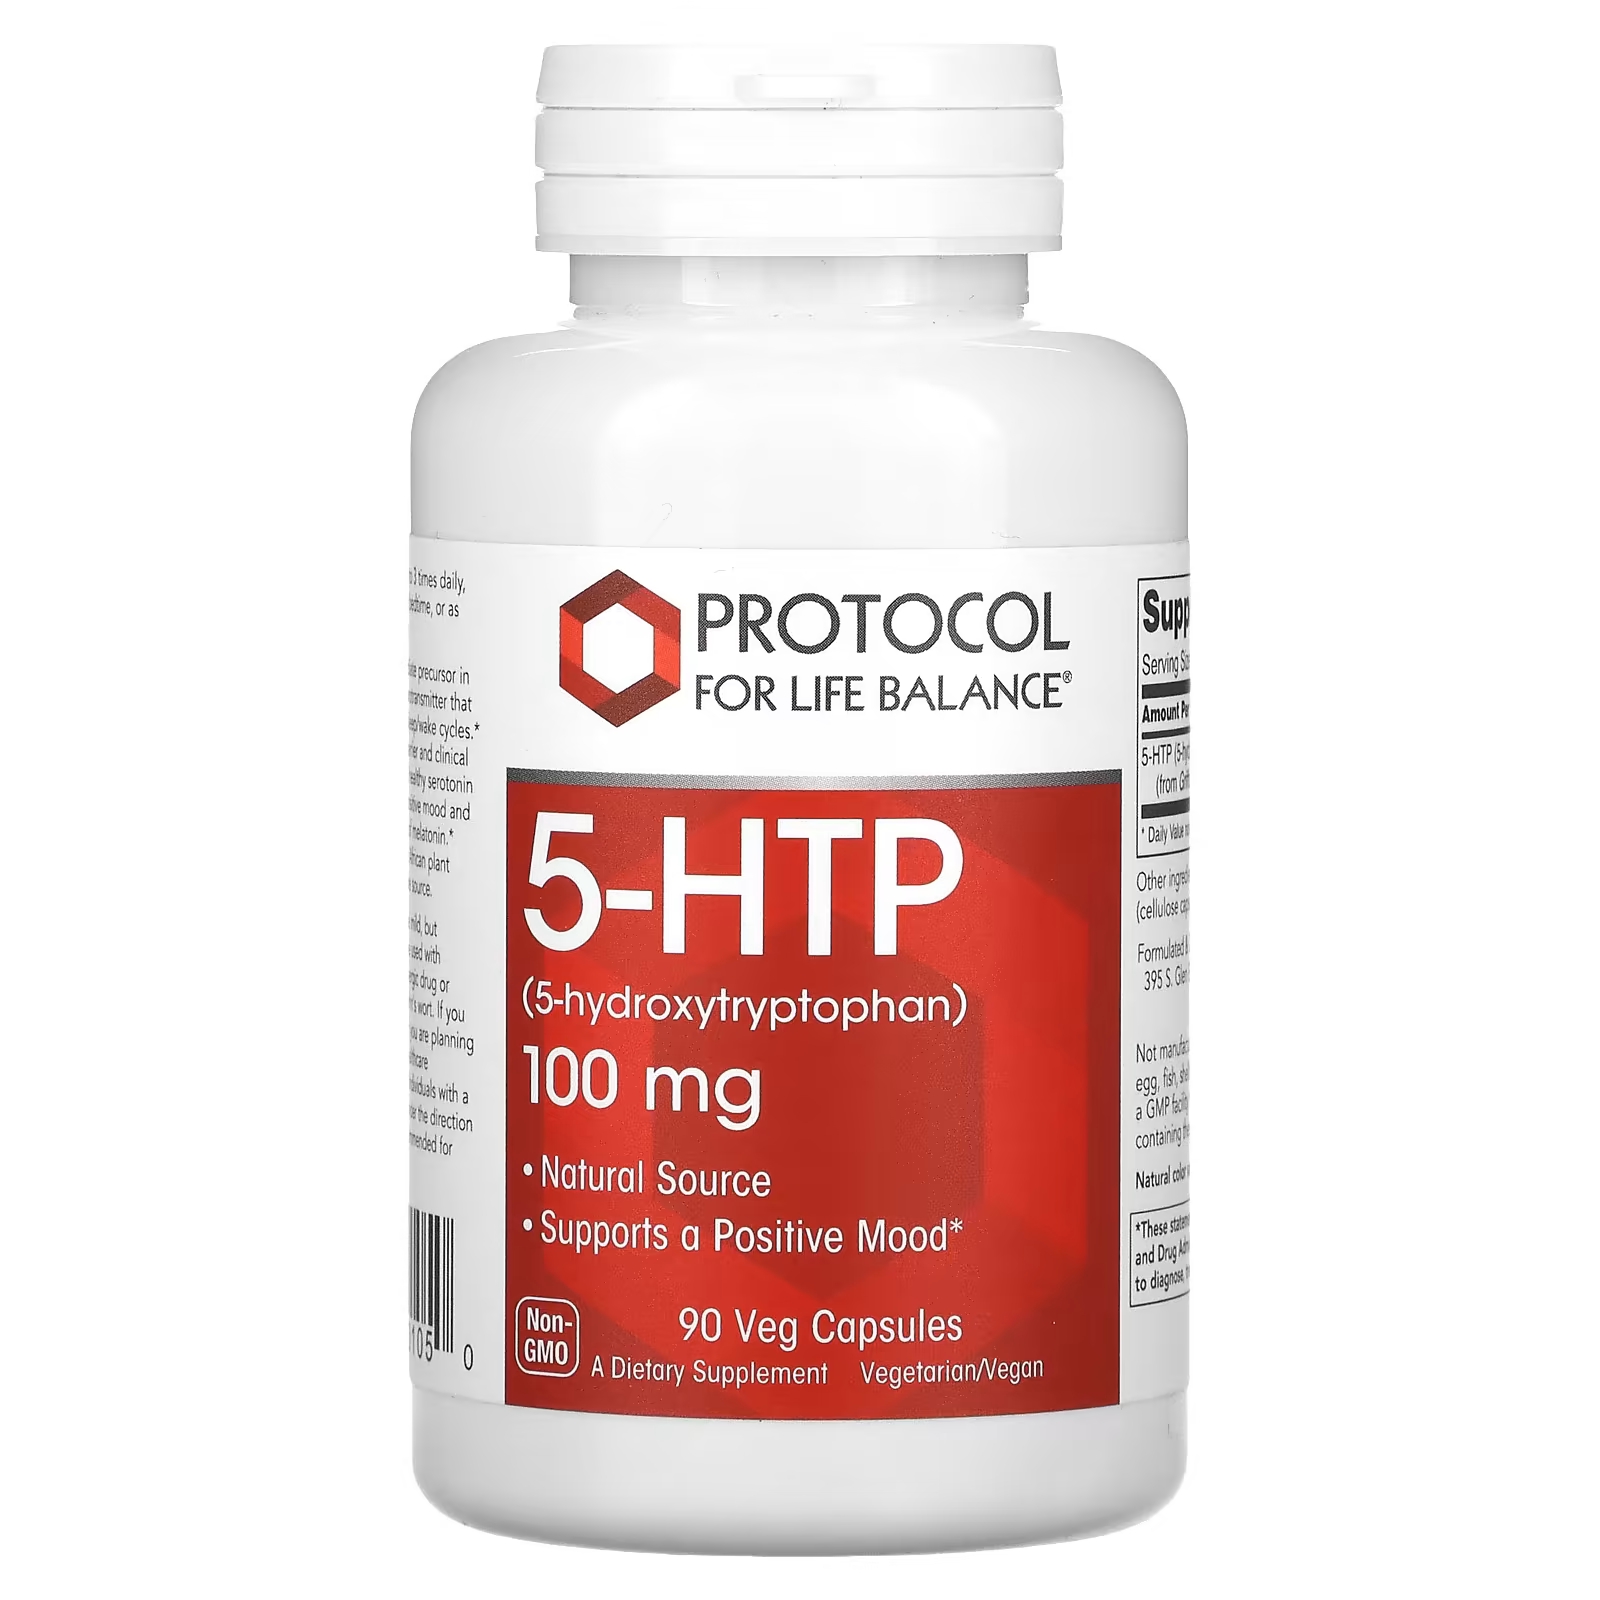 Пищевая добавка Protocol for Life Balance 5-HTP, 100 мг, 90 растительных капсул